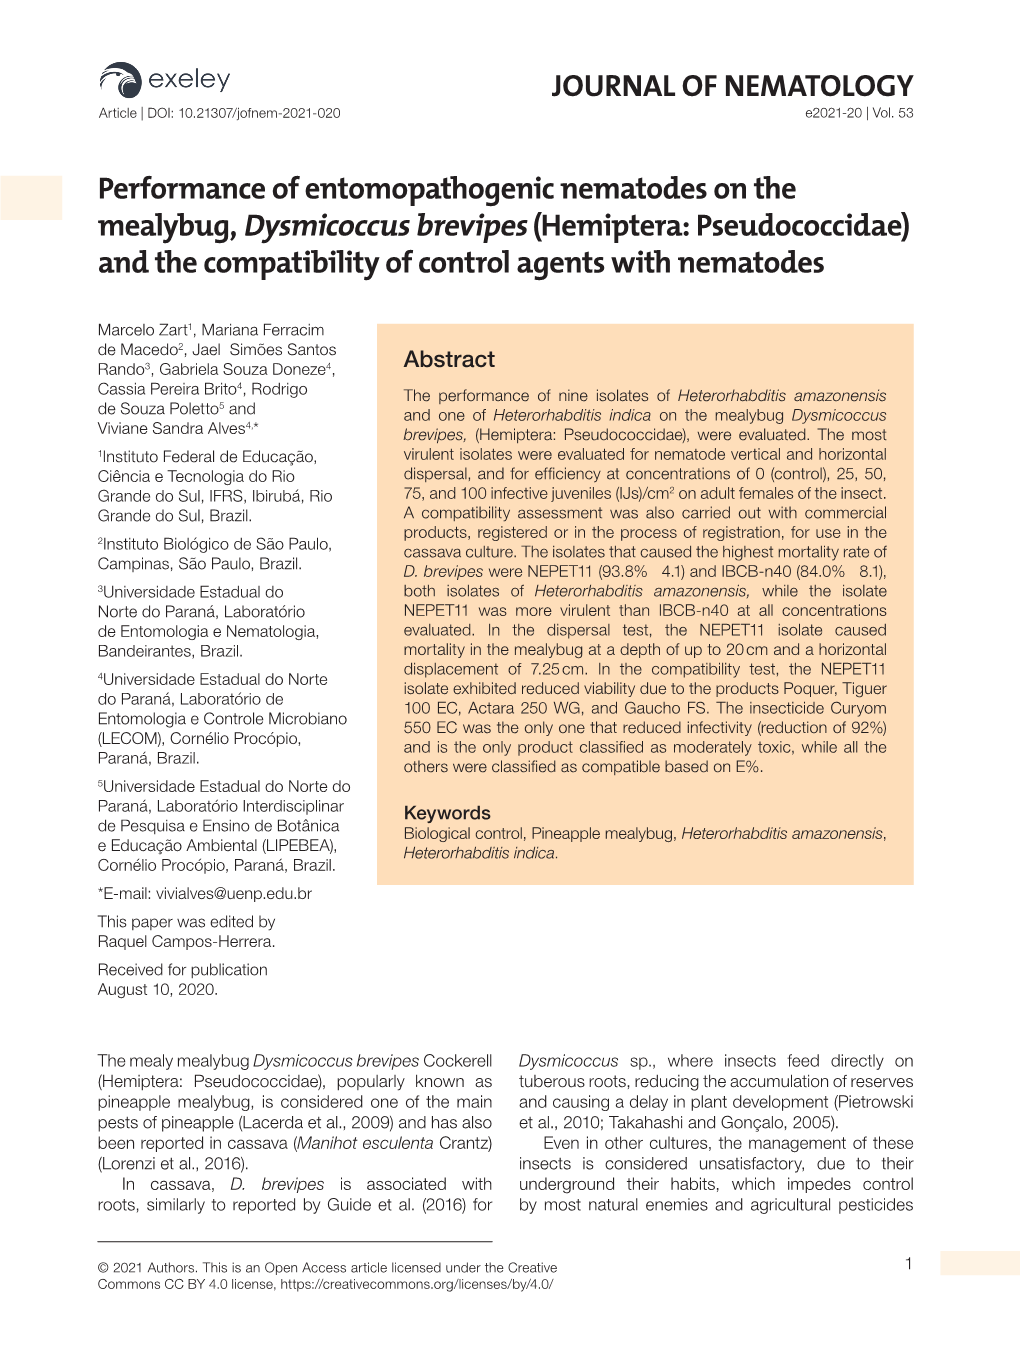 JOURNAL of NEMATOLOGY Performance of Entomopathogenic Nematodes on the Mealybug, Dysmicoccus Brevipes